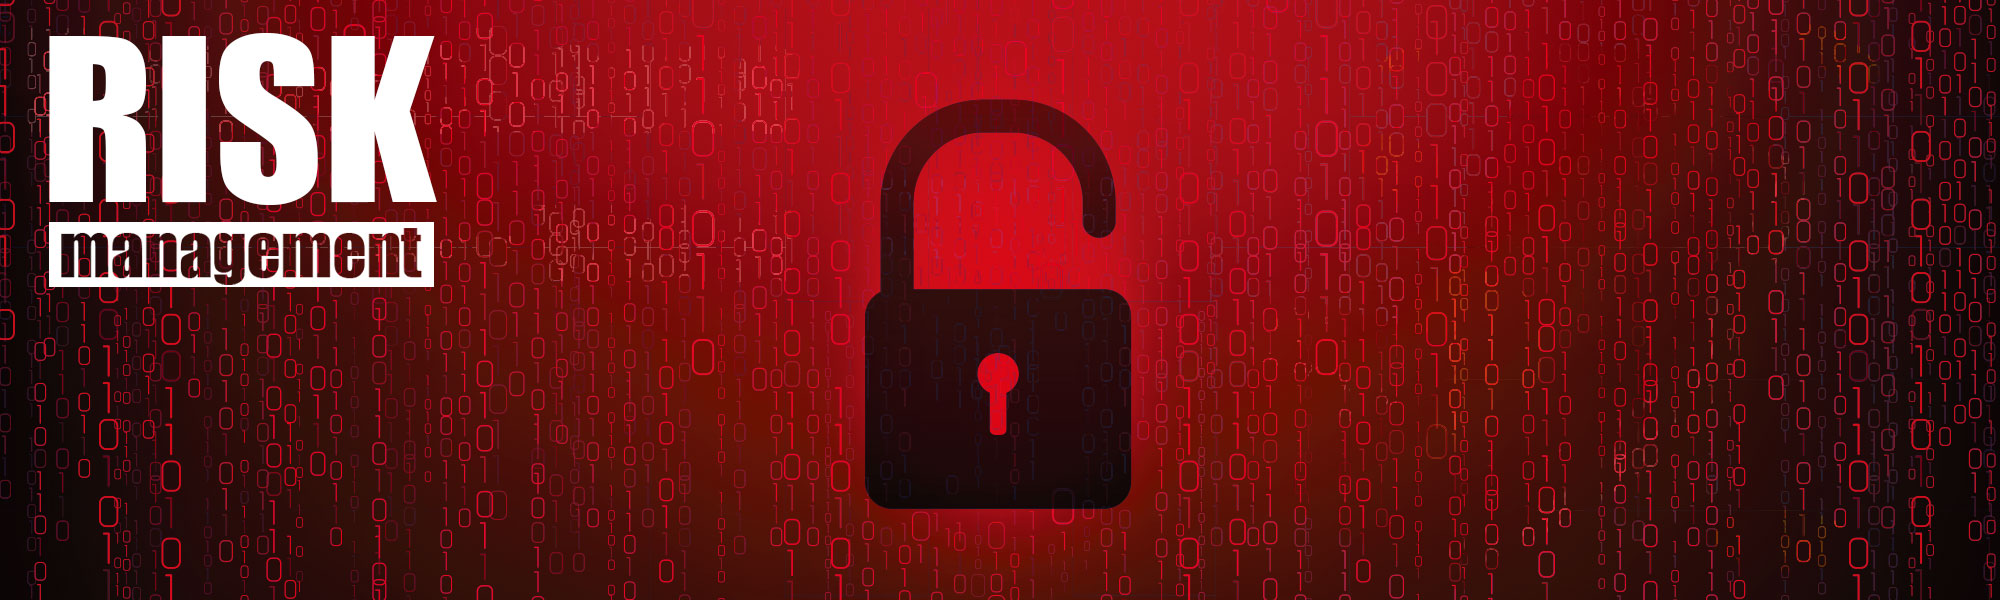 暗号資産を扱う上での注意事項、リスクマネジメント